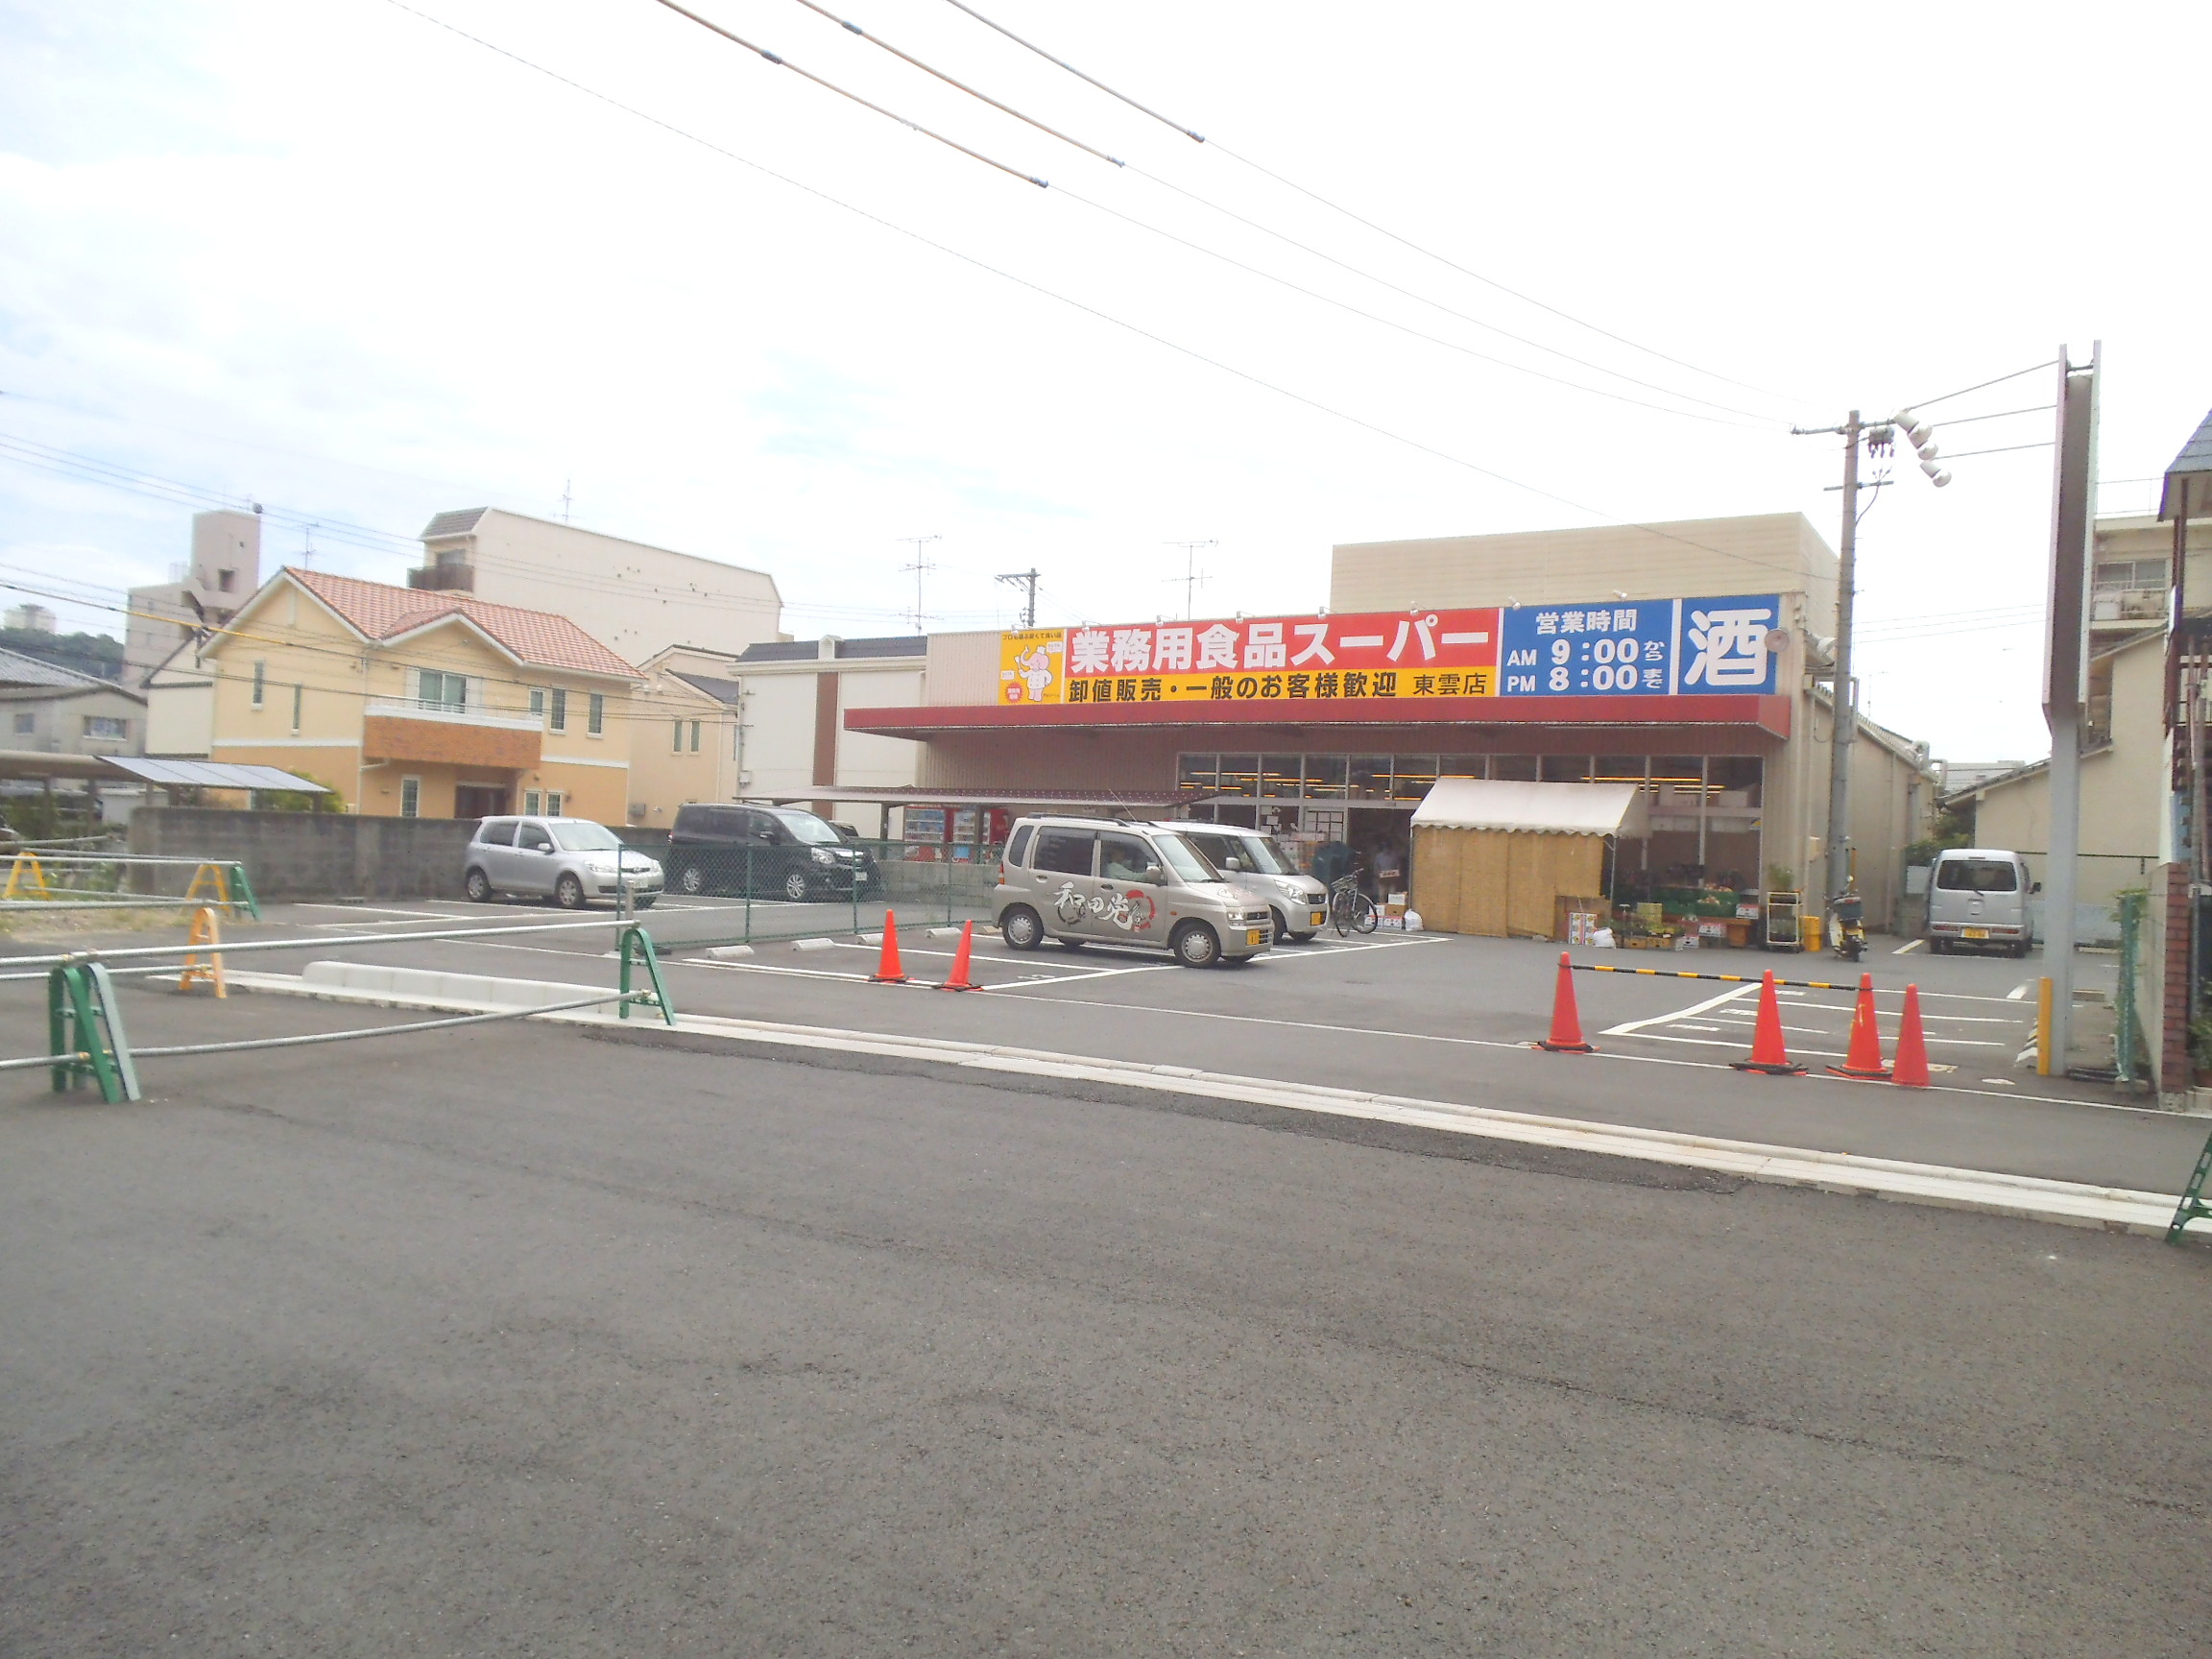 Supermarket. 729m up business for Super Shinonome store (Super)